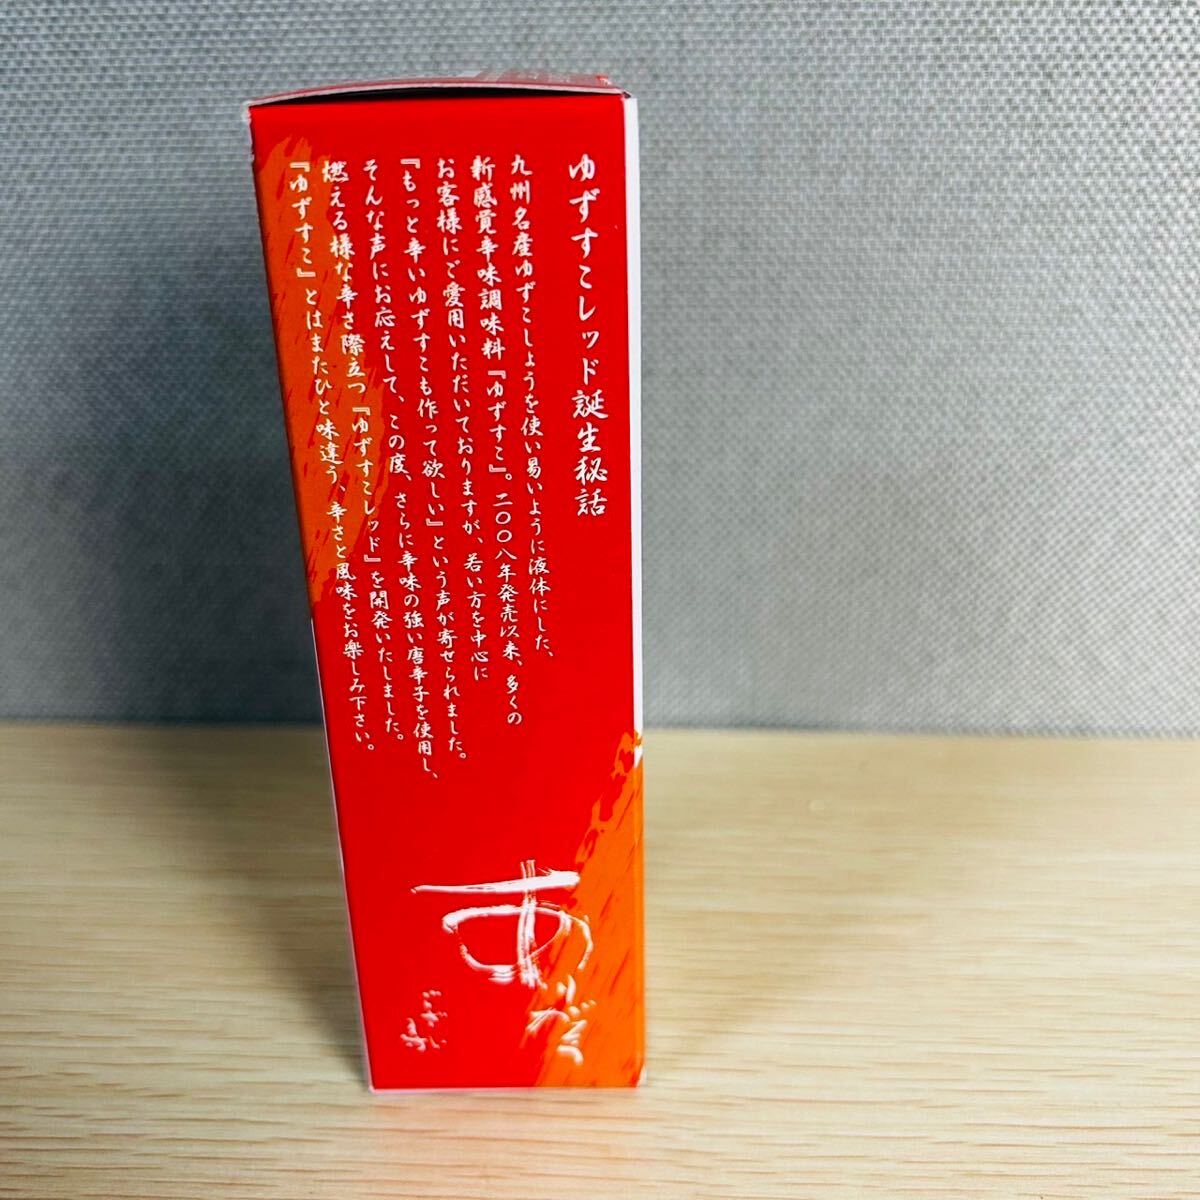 *[ unopened ] yuzu .. passion. red height . shop new sense . taste seasoning YUZUSUCO 75g13 point best-before date 24.06.01